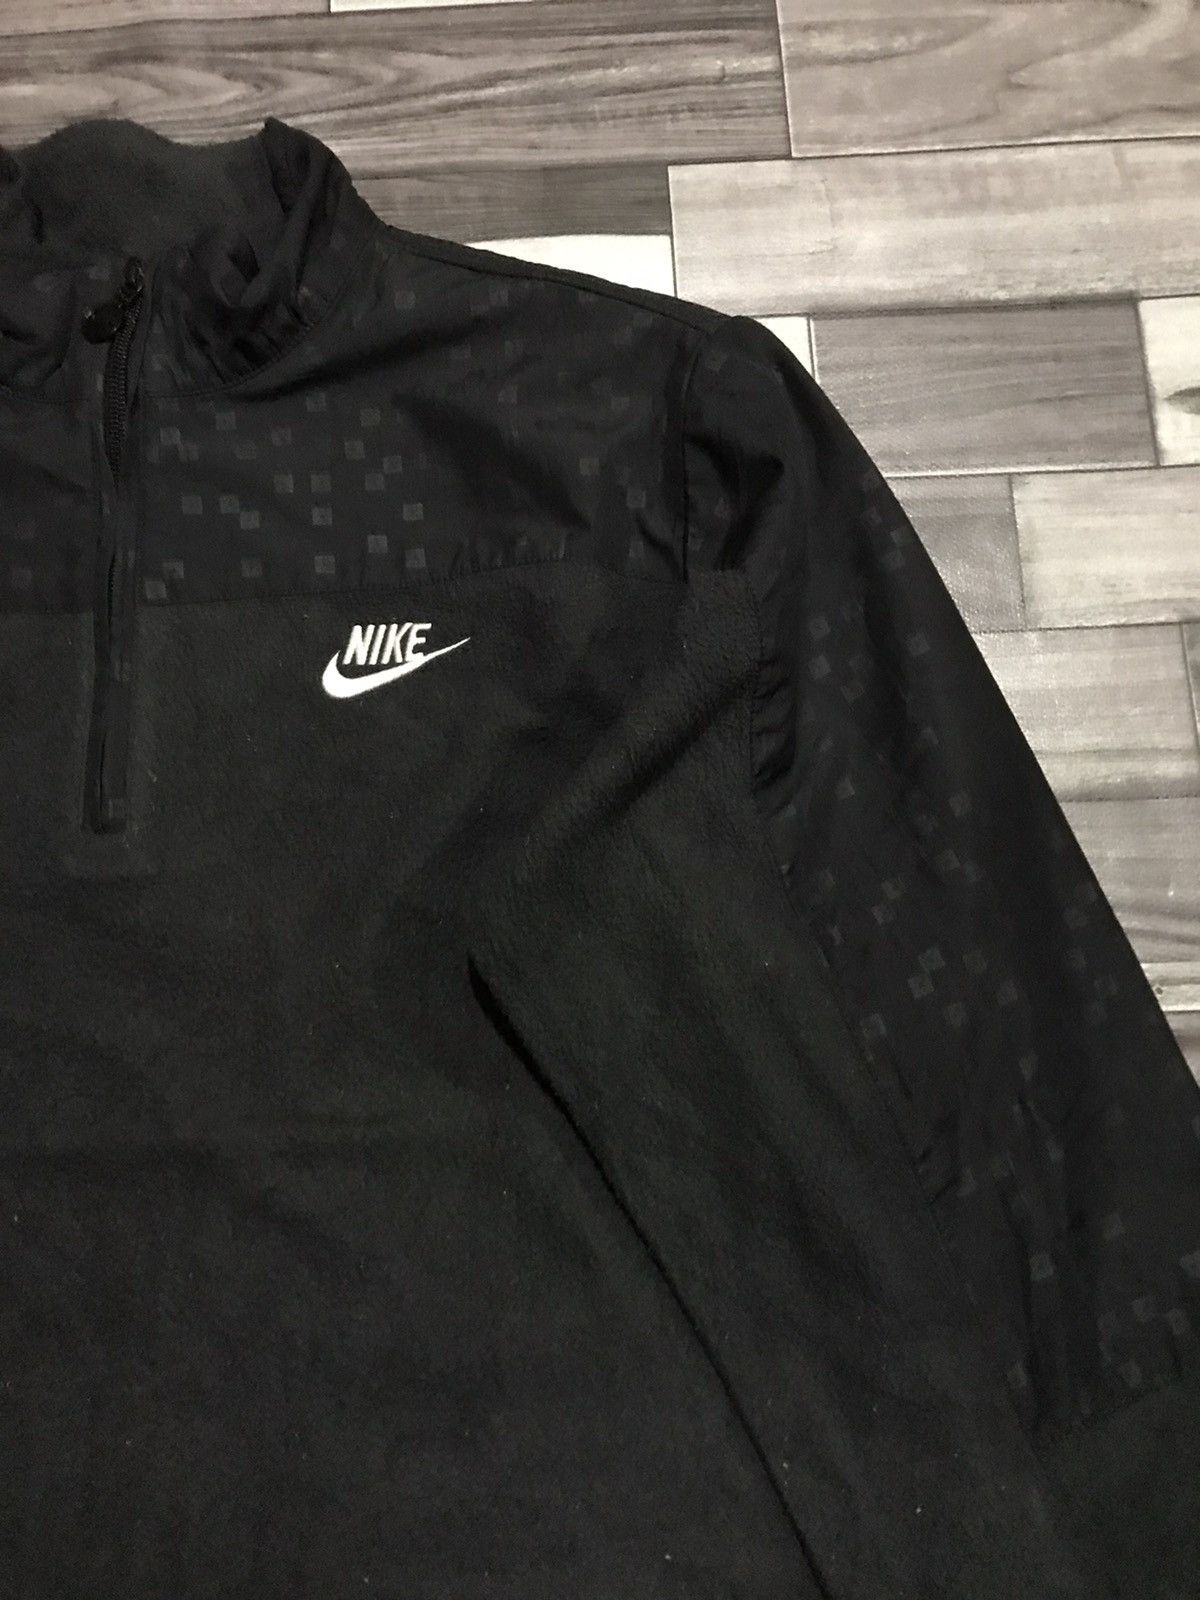 LAST DROP!! Nike fleece jacket - R9 - 2